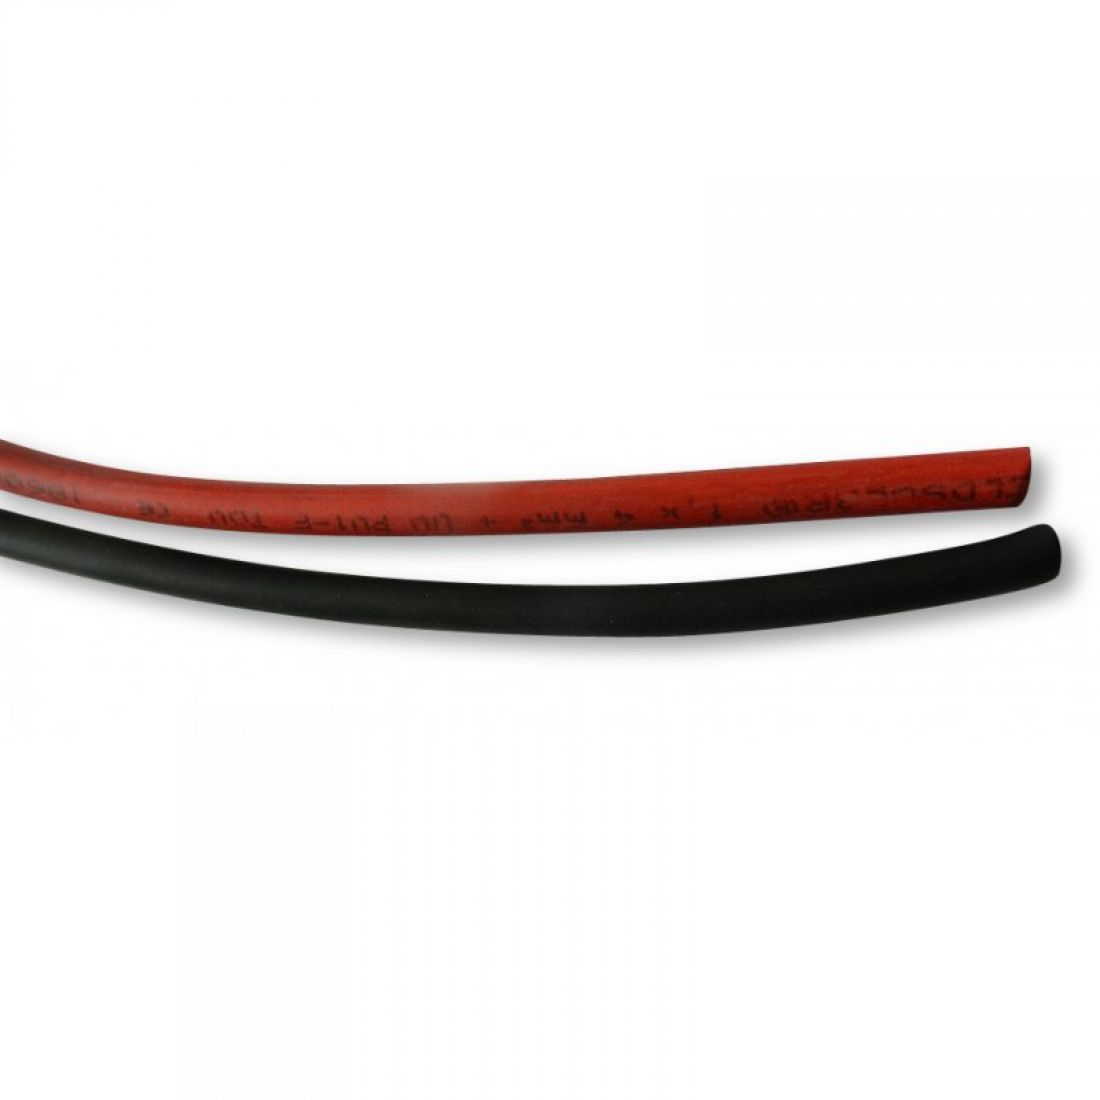 Kabel 2,5 mm2 rot - einadrig, flexibel und isoliert